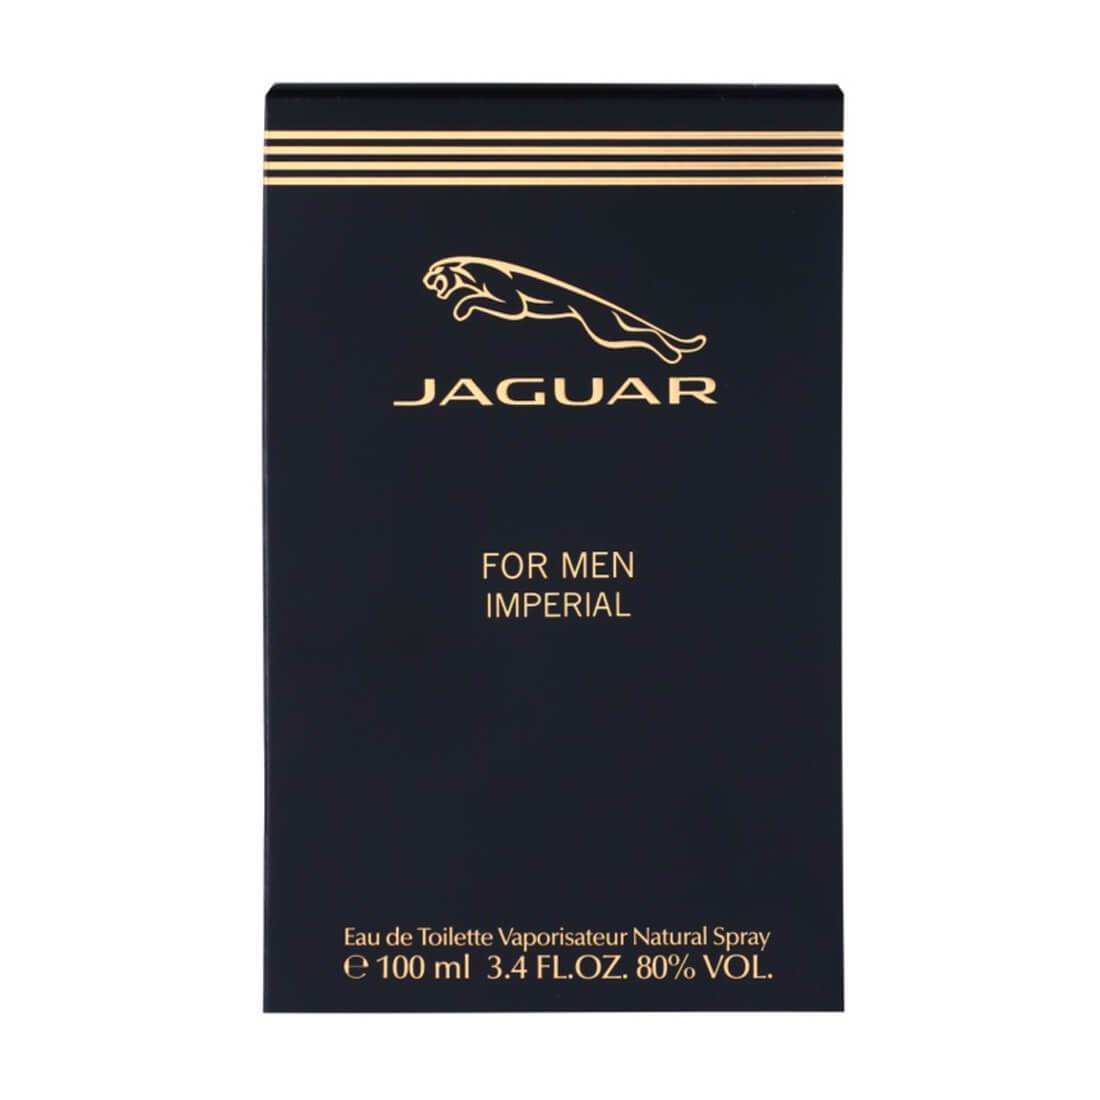 Jaguar Imperial Eau de Toilette Perfume For Men